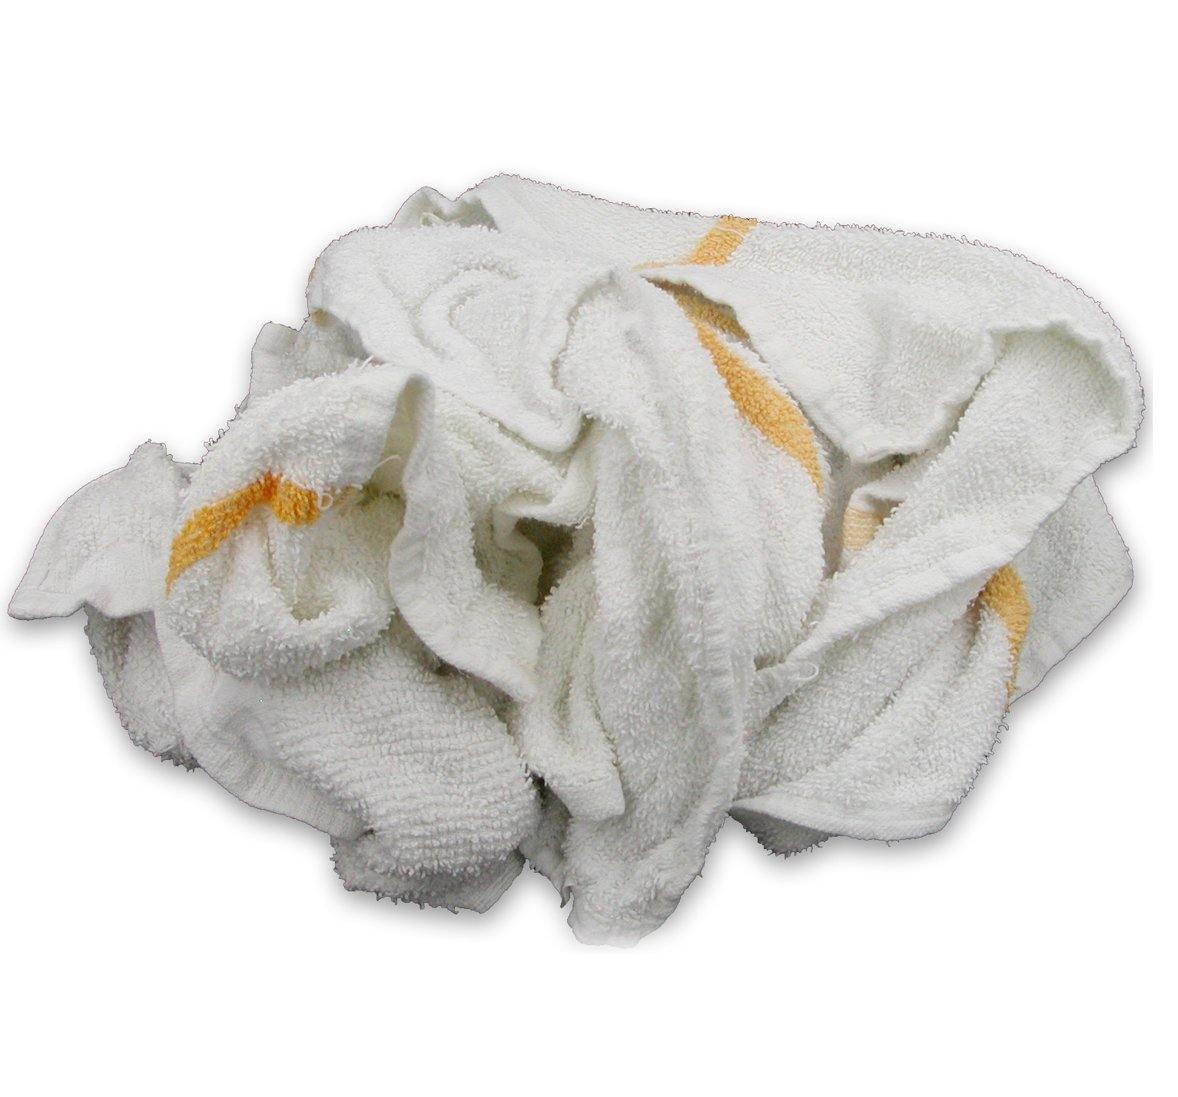 Terry Cotton Bar Towels - (10 lb. Box)